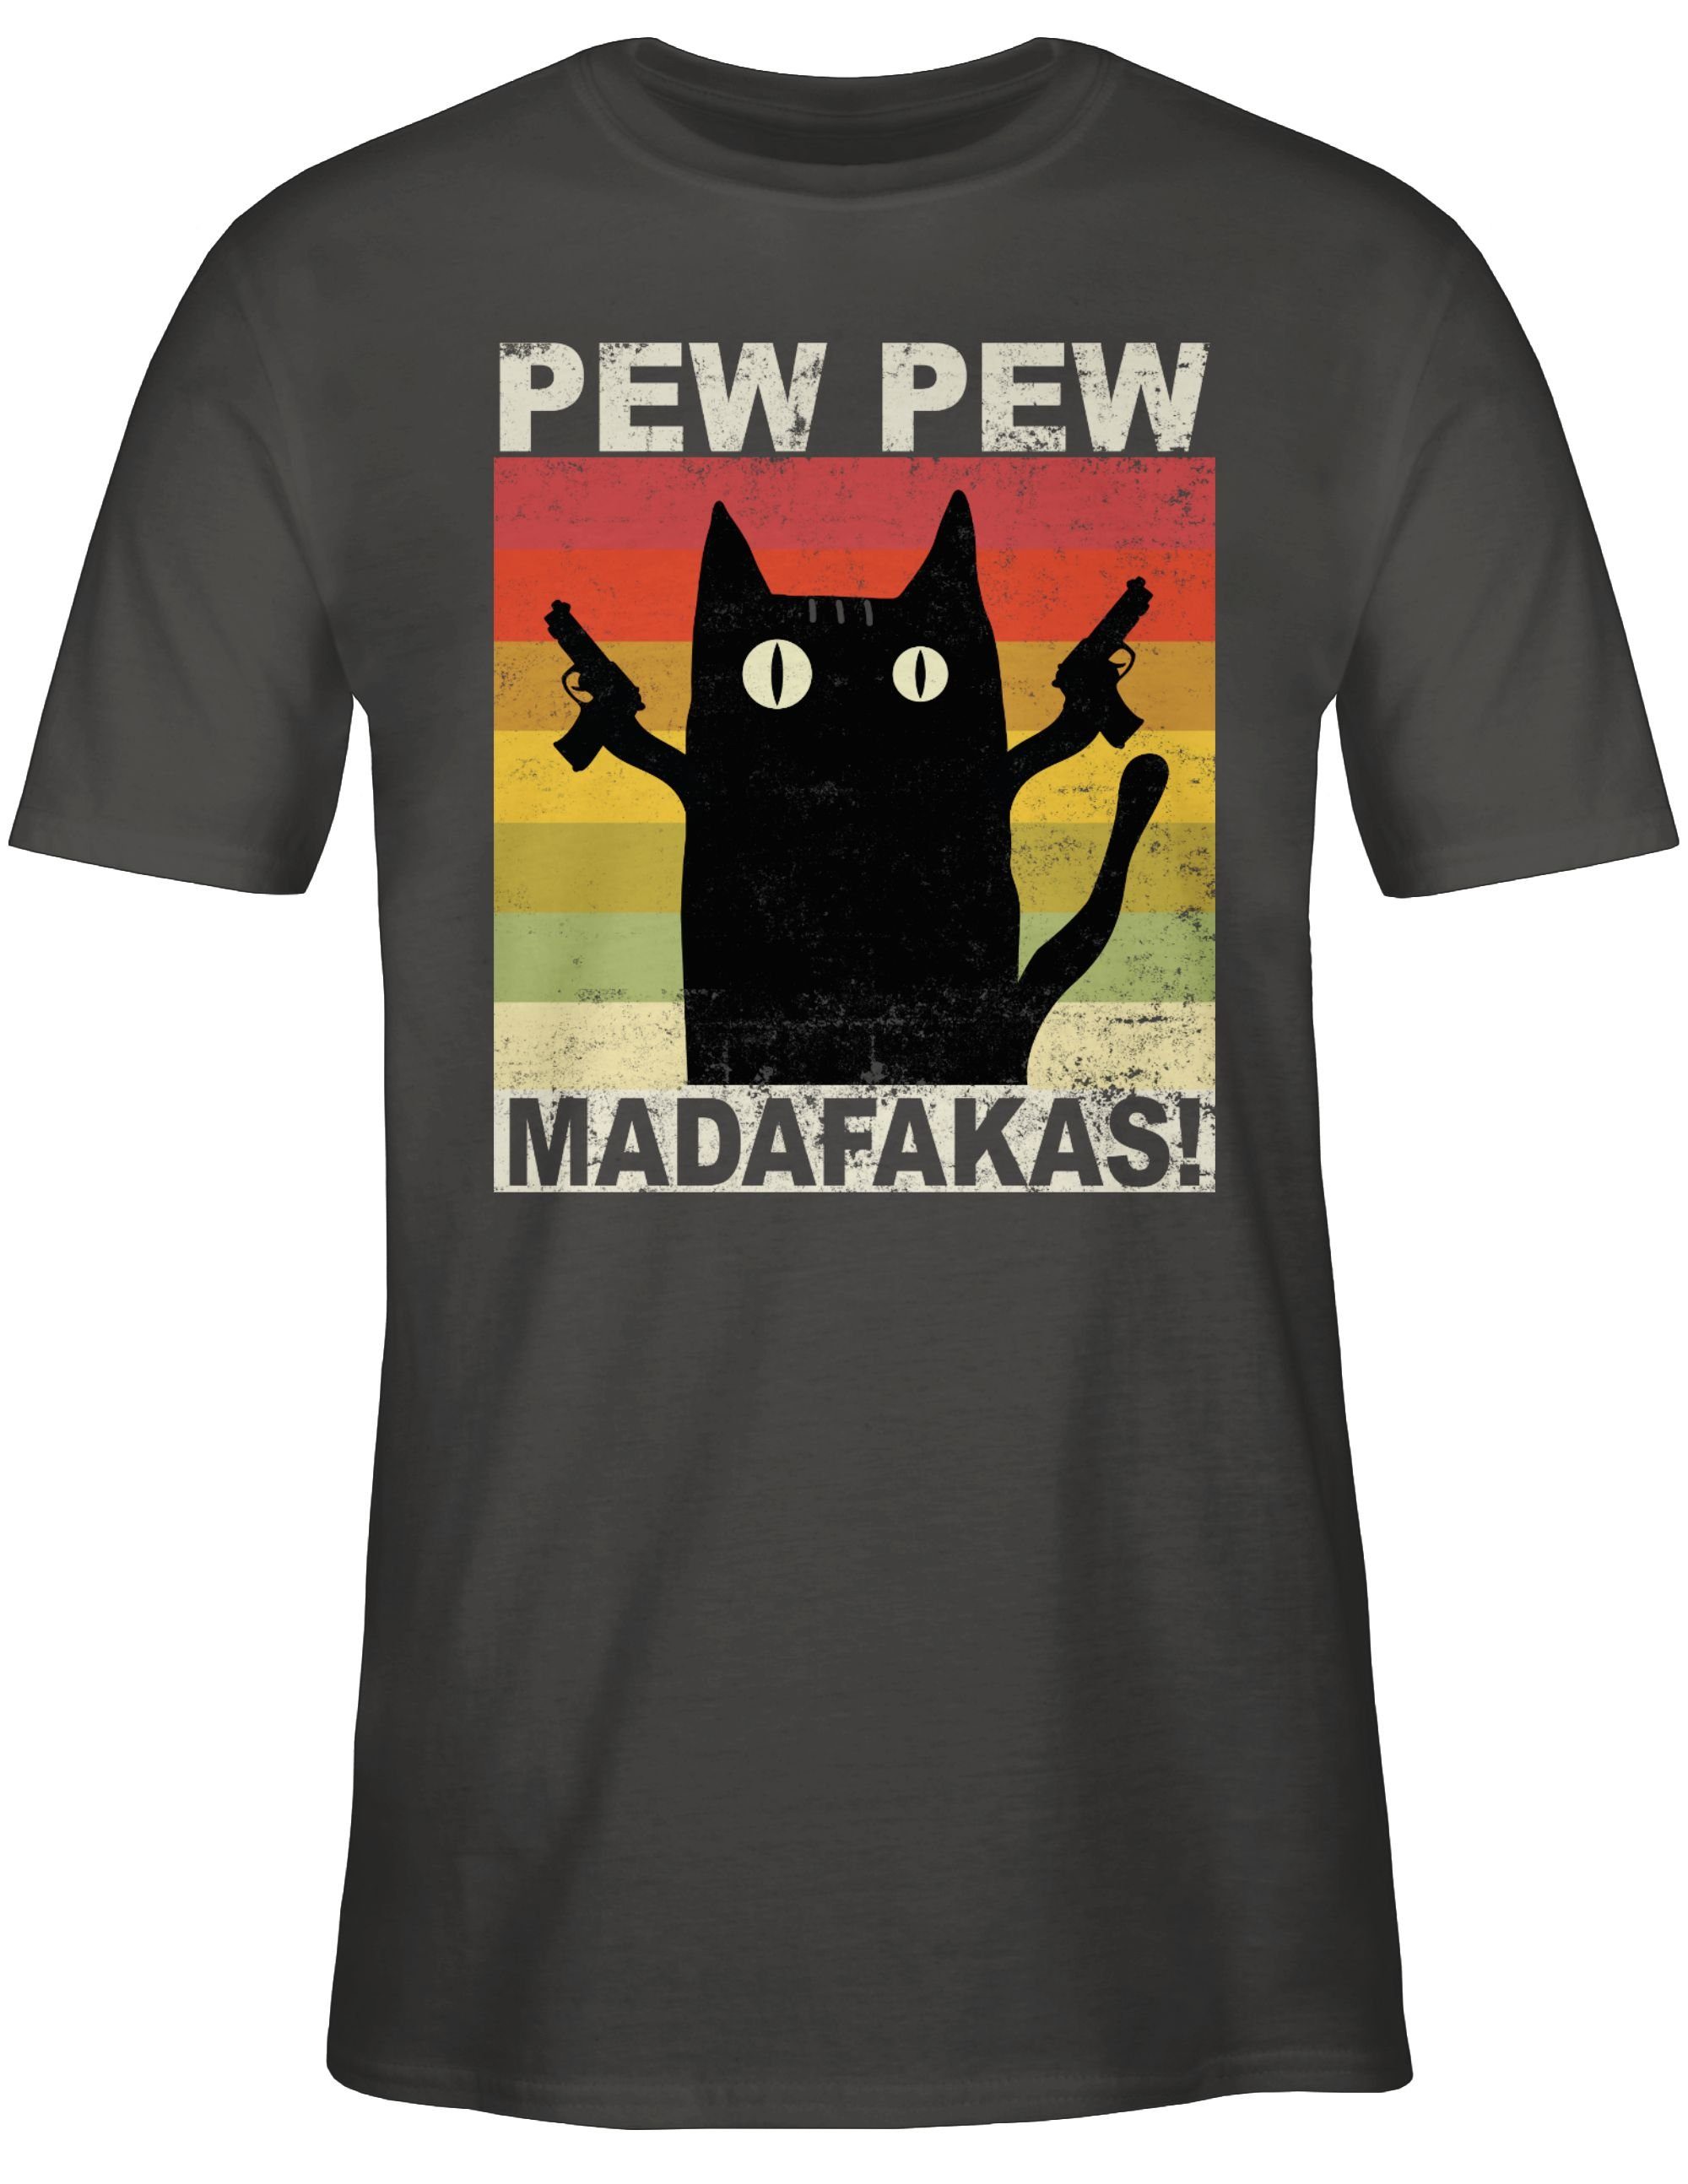 Dunkelgrau 02 Pew Pew T-Shirt Madafakas Statement Shirtracer Sprüche